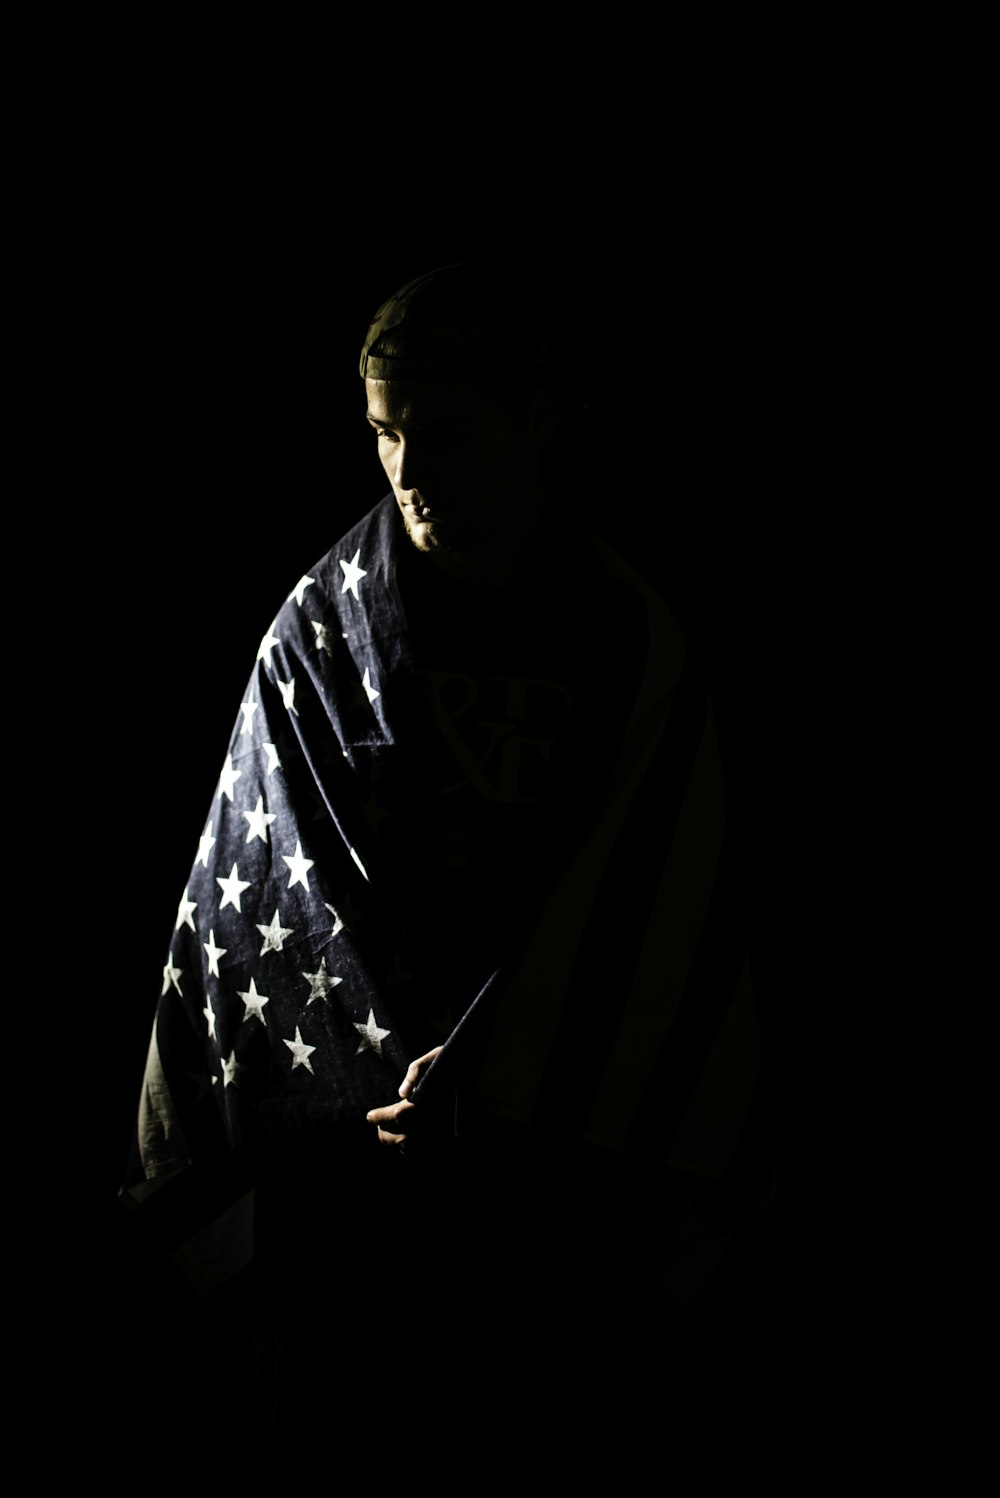 어둠 속에서 미국 국기에 싸인 남자